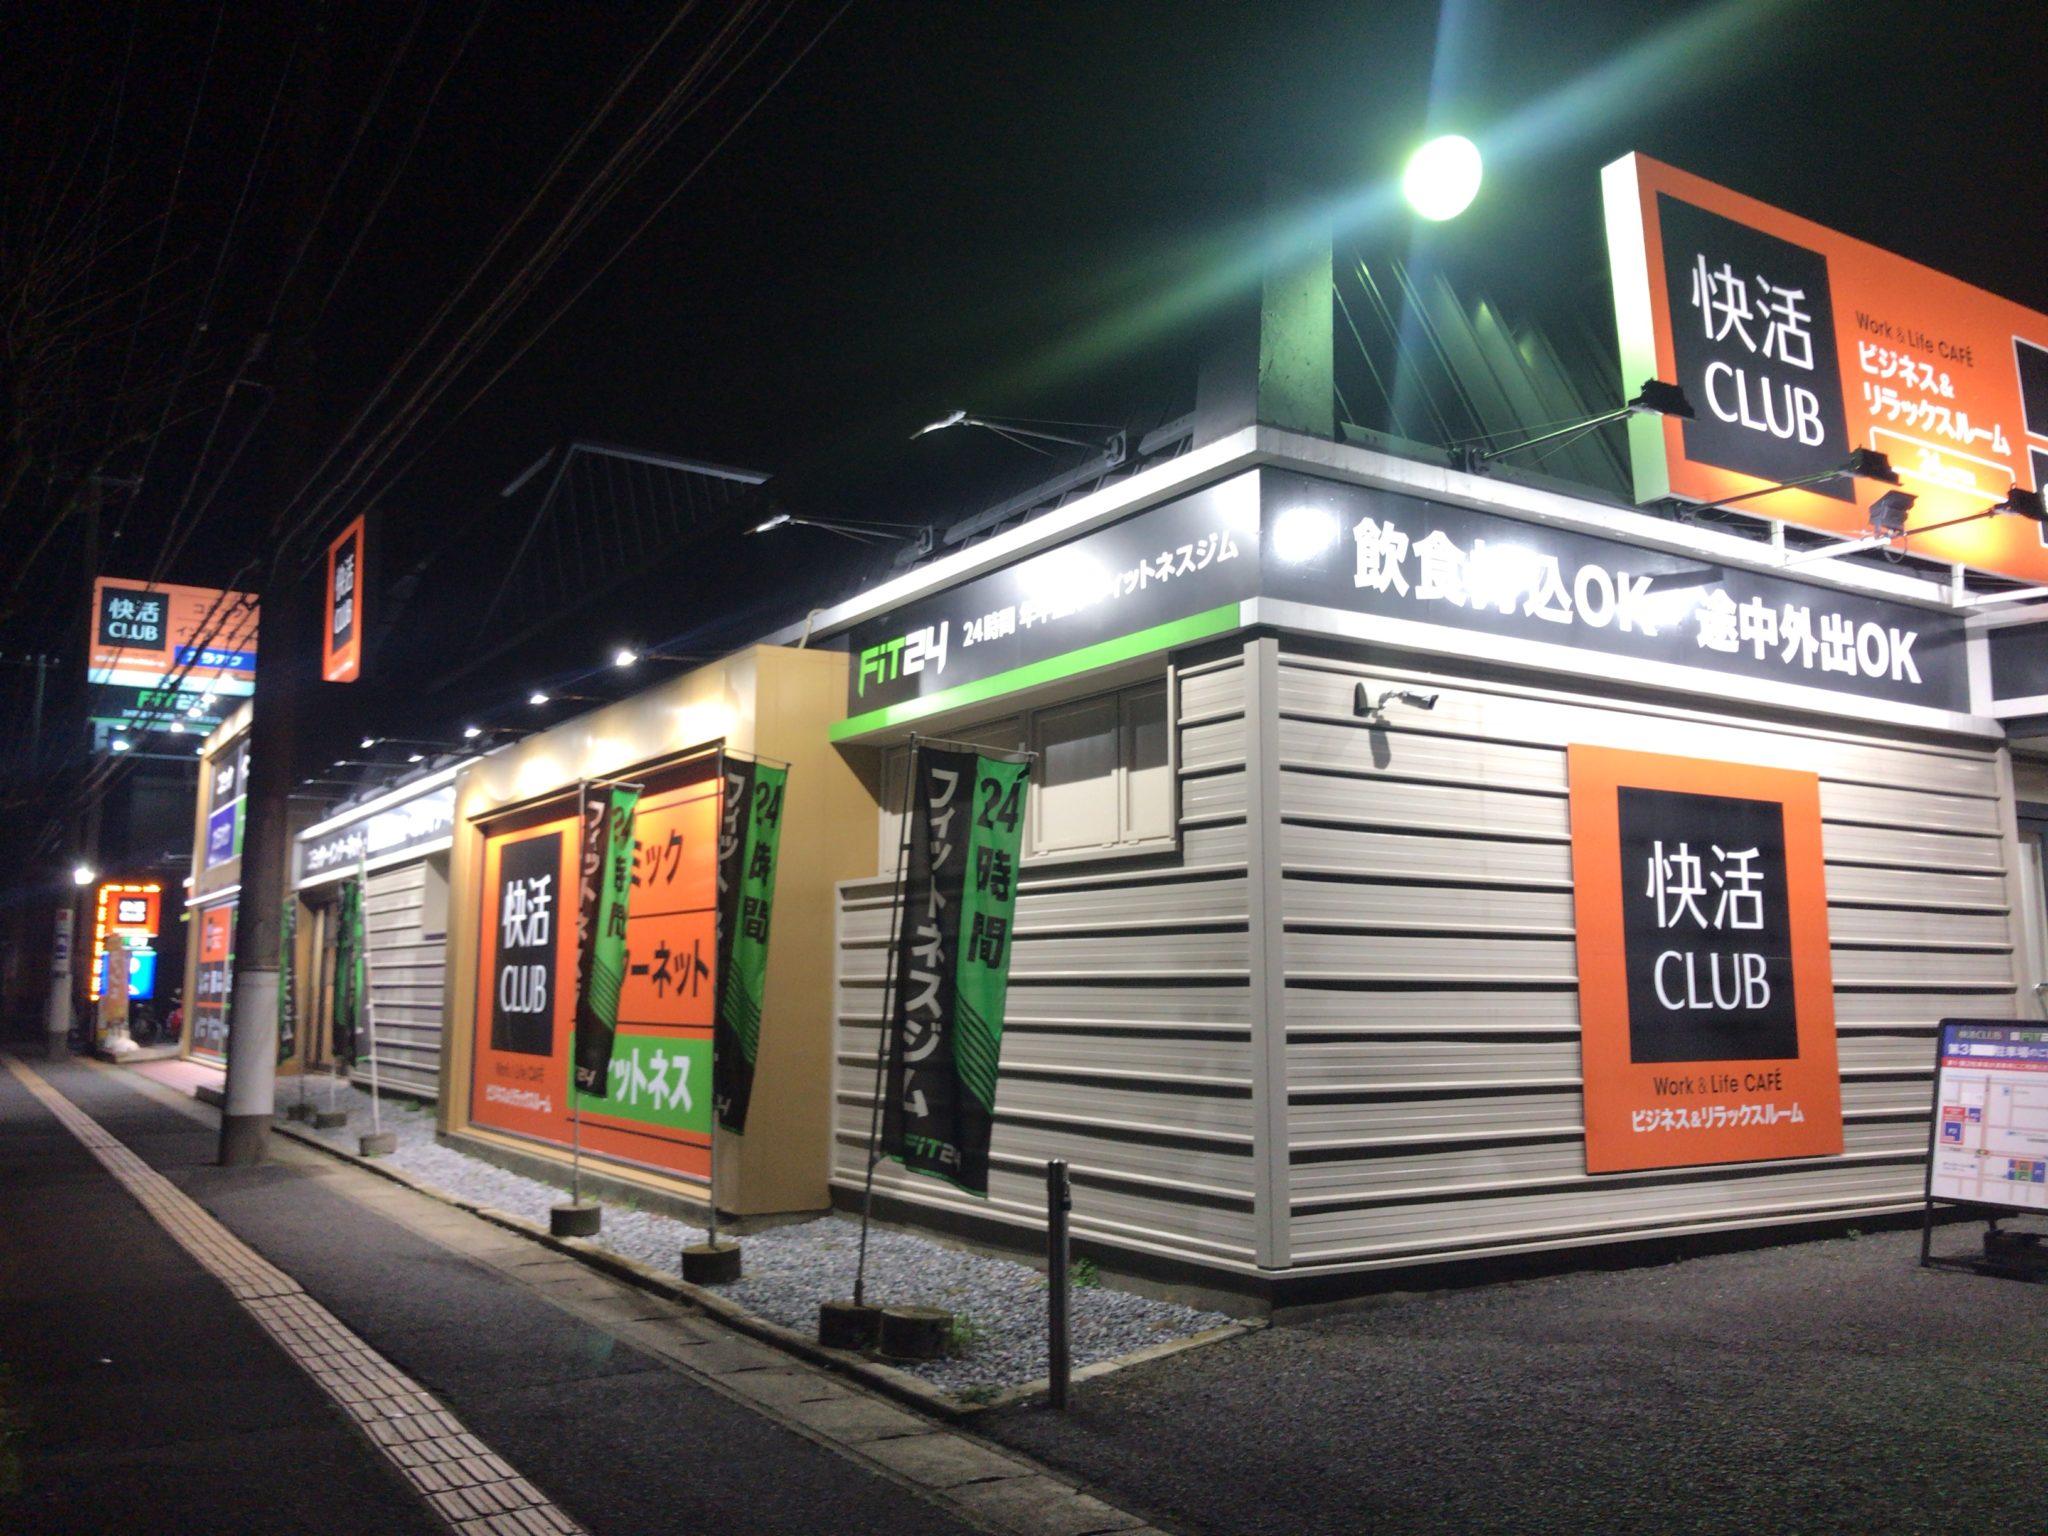 五井駅から徒歩22分 快活club 市原店をレポート 日本全国のネカフェ 漫画喫茶マップのヒマップ